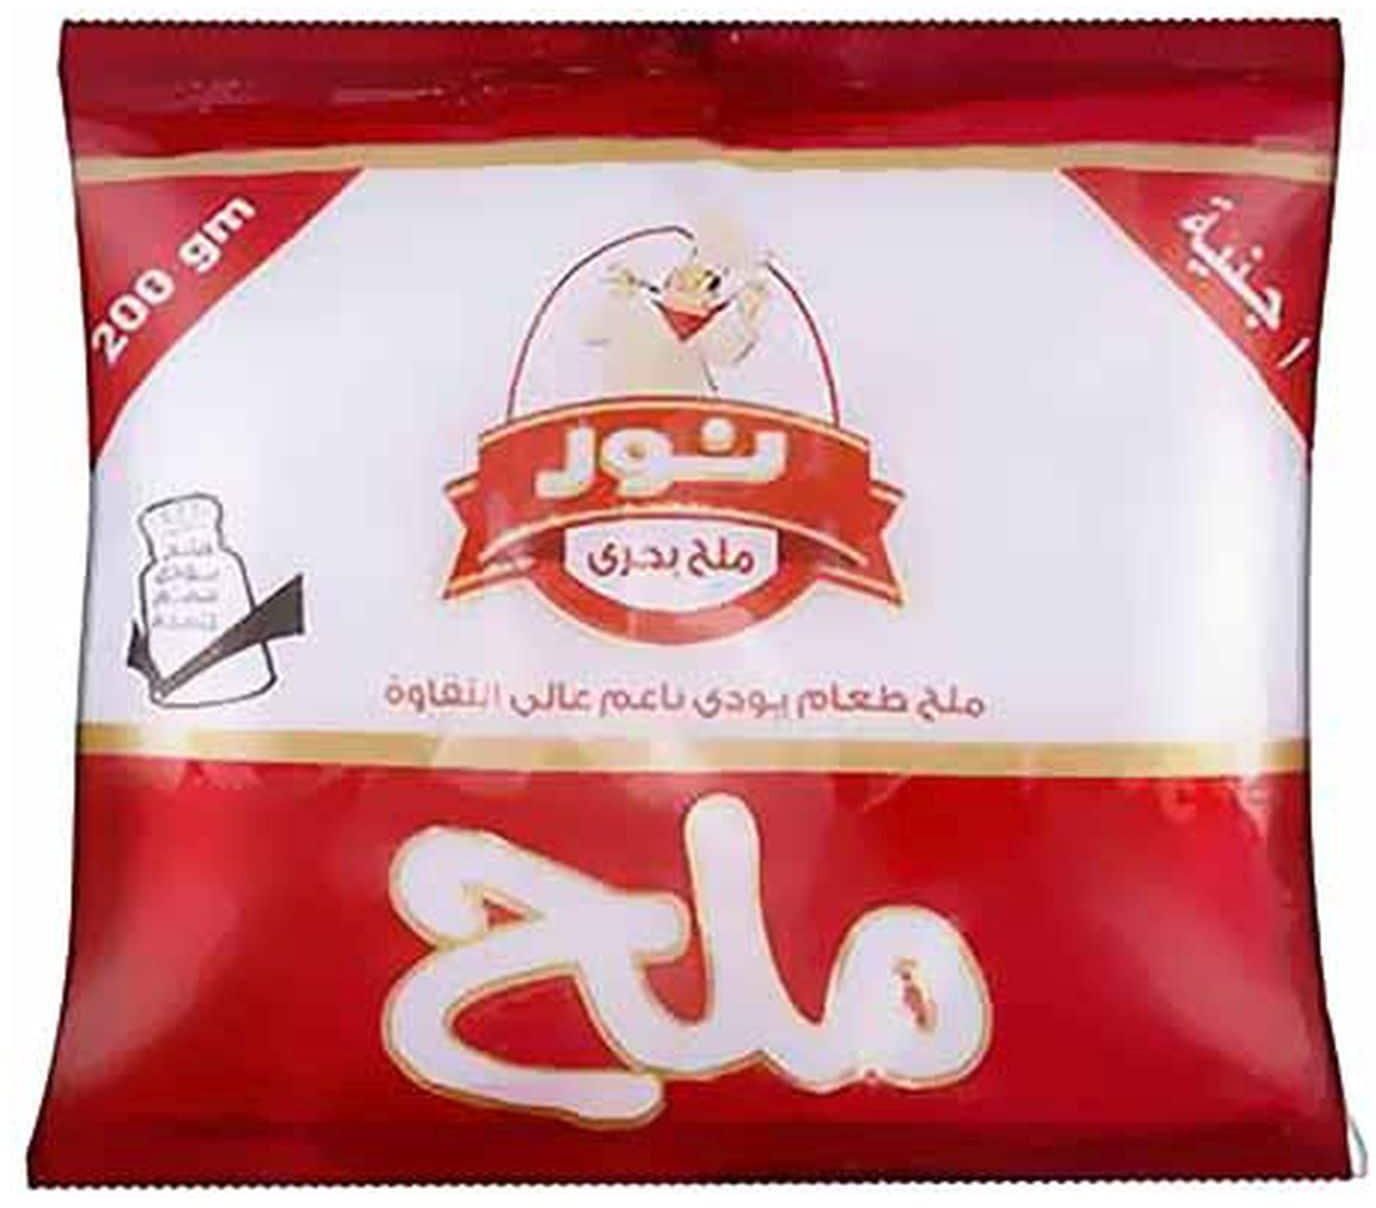 Nour Iodized Table Salt - 200 gram